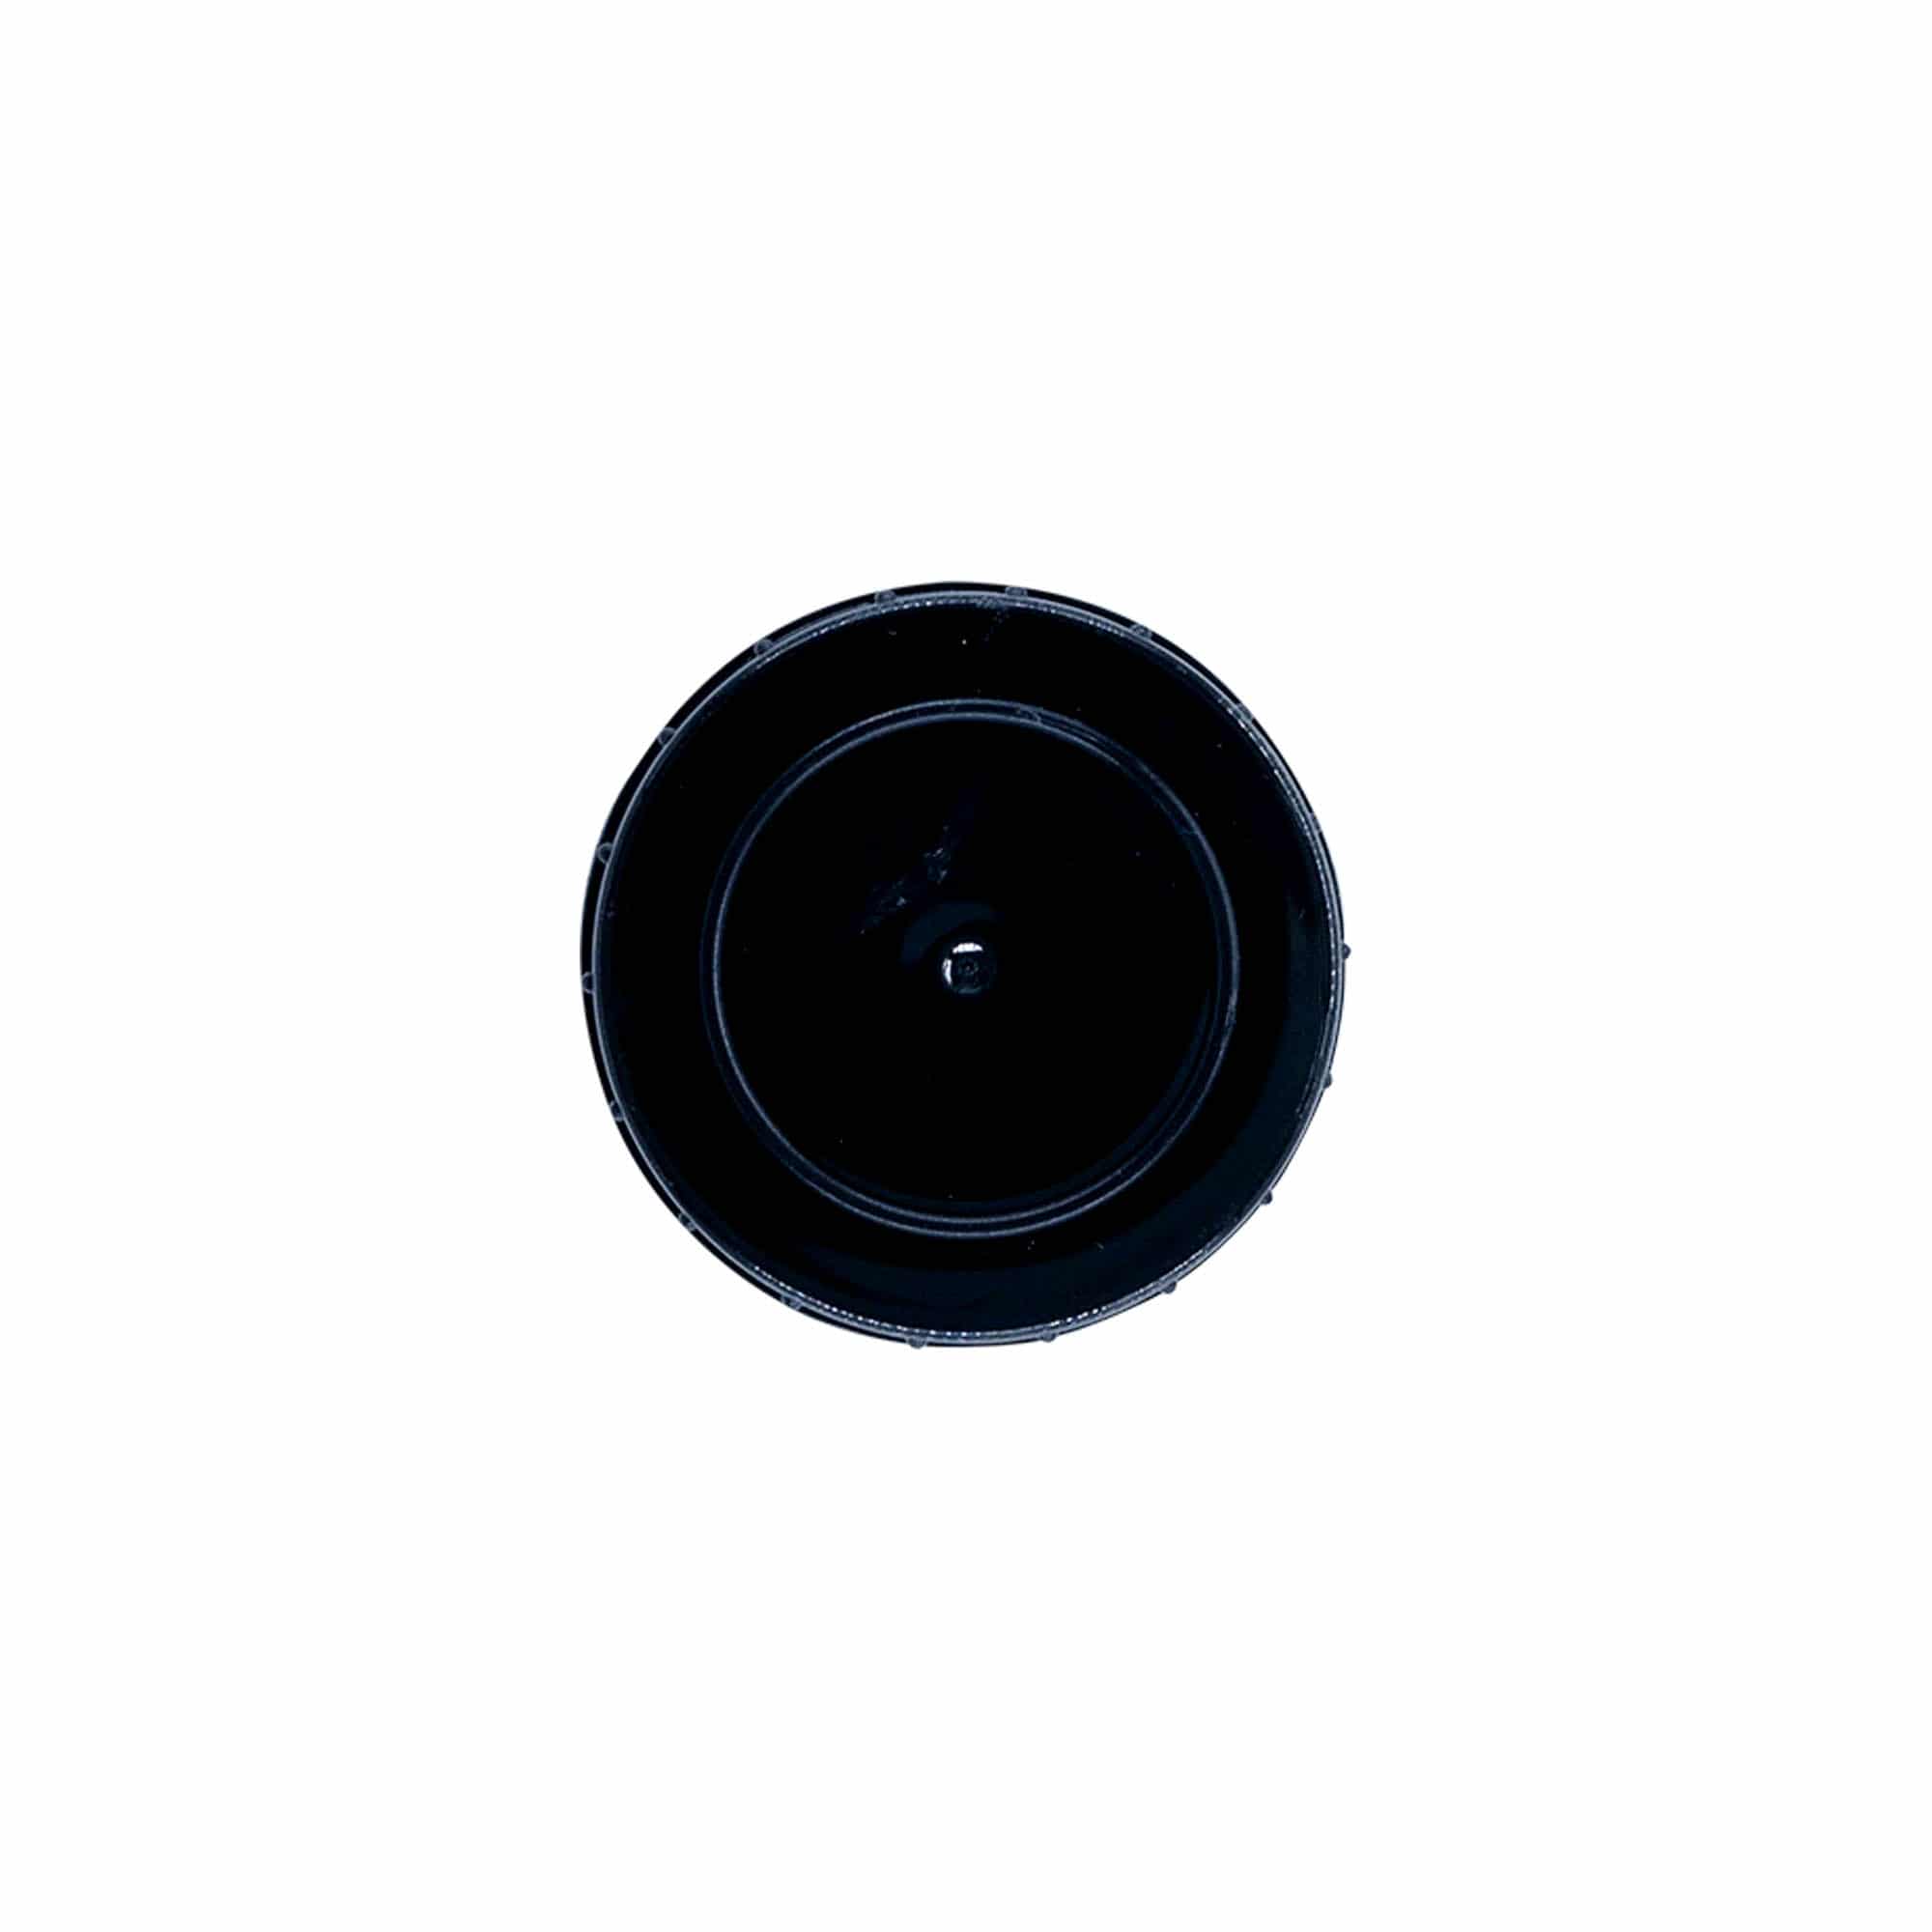 Zakrętka, tworzywo sztuczne PP, kolor czarny, do zamknięcia: DIN 32